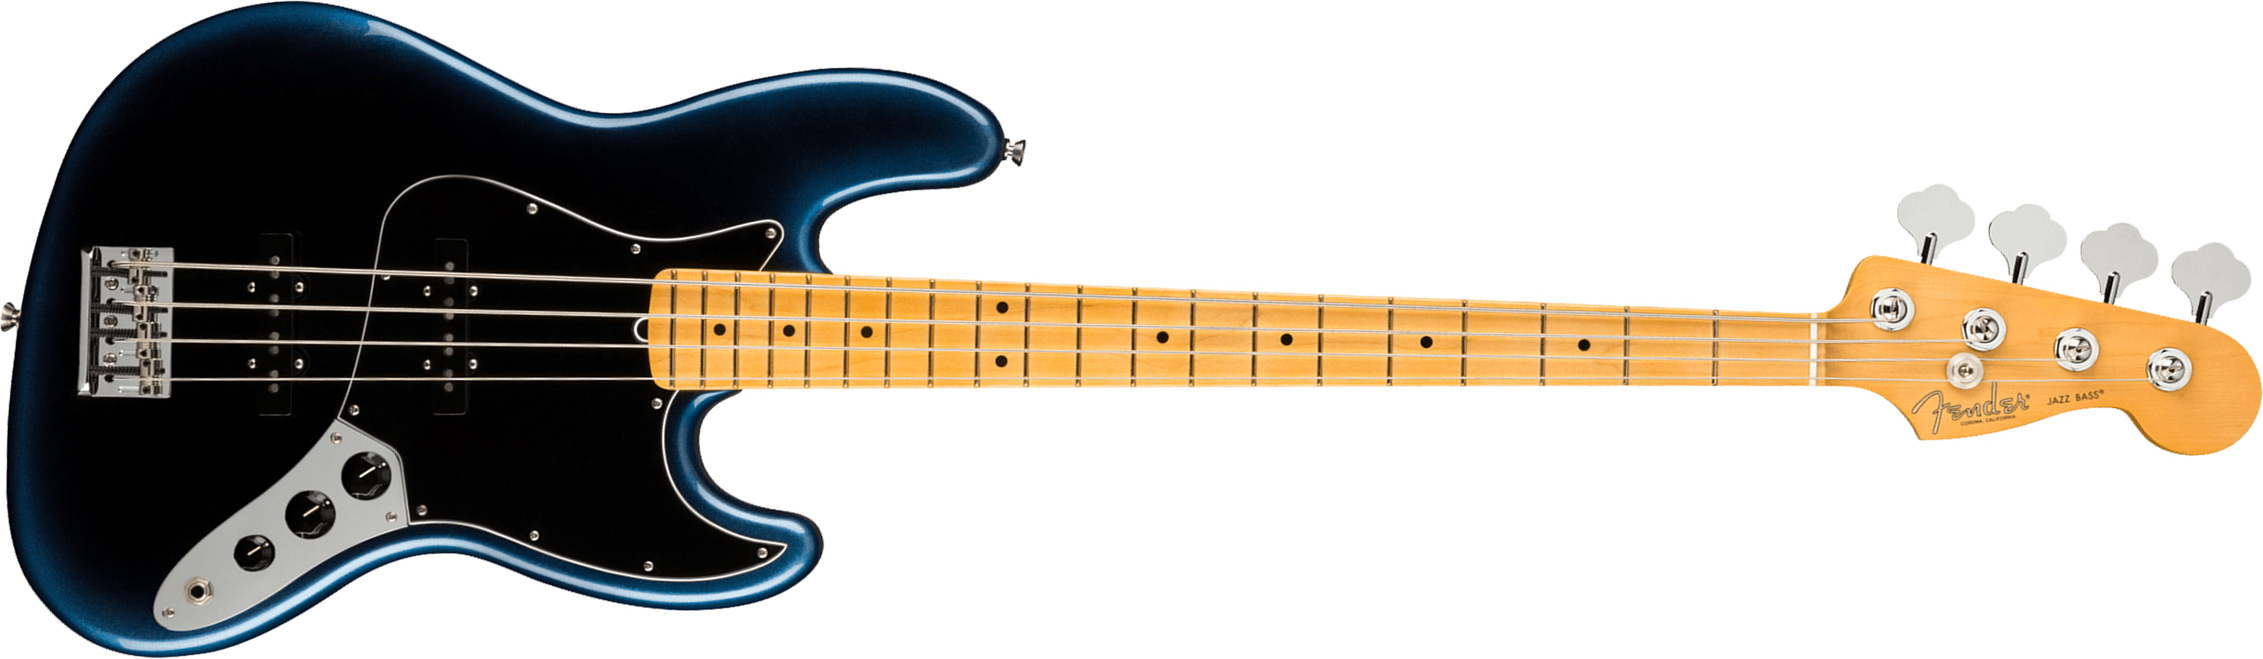 Fender Jazz Bass American Professional Ii Usa Mn - Dark Night - Bajo eléctrico de cuerpo sólido - Main picture